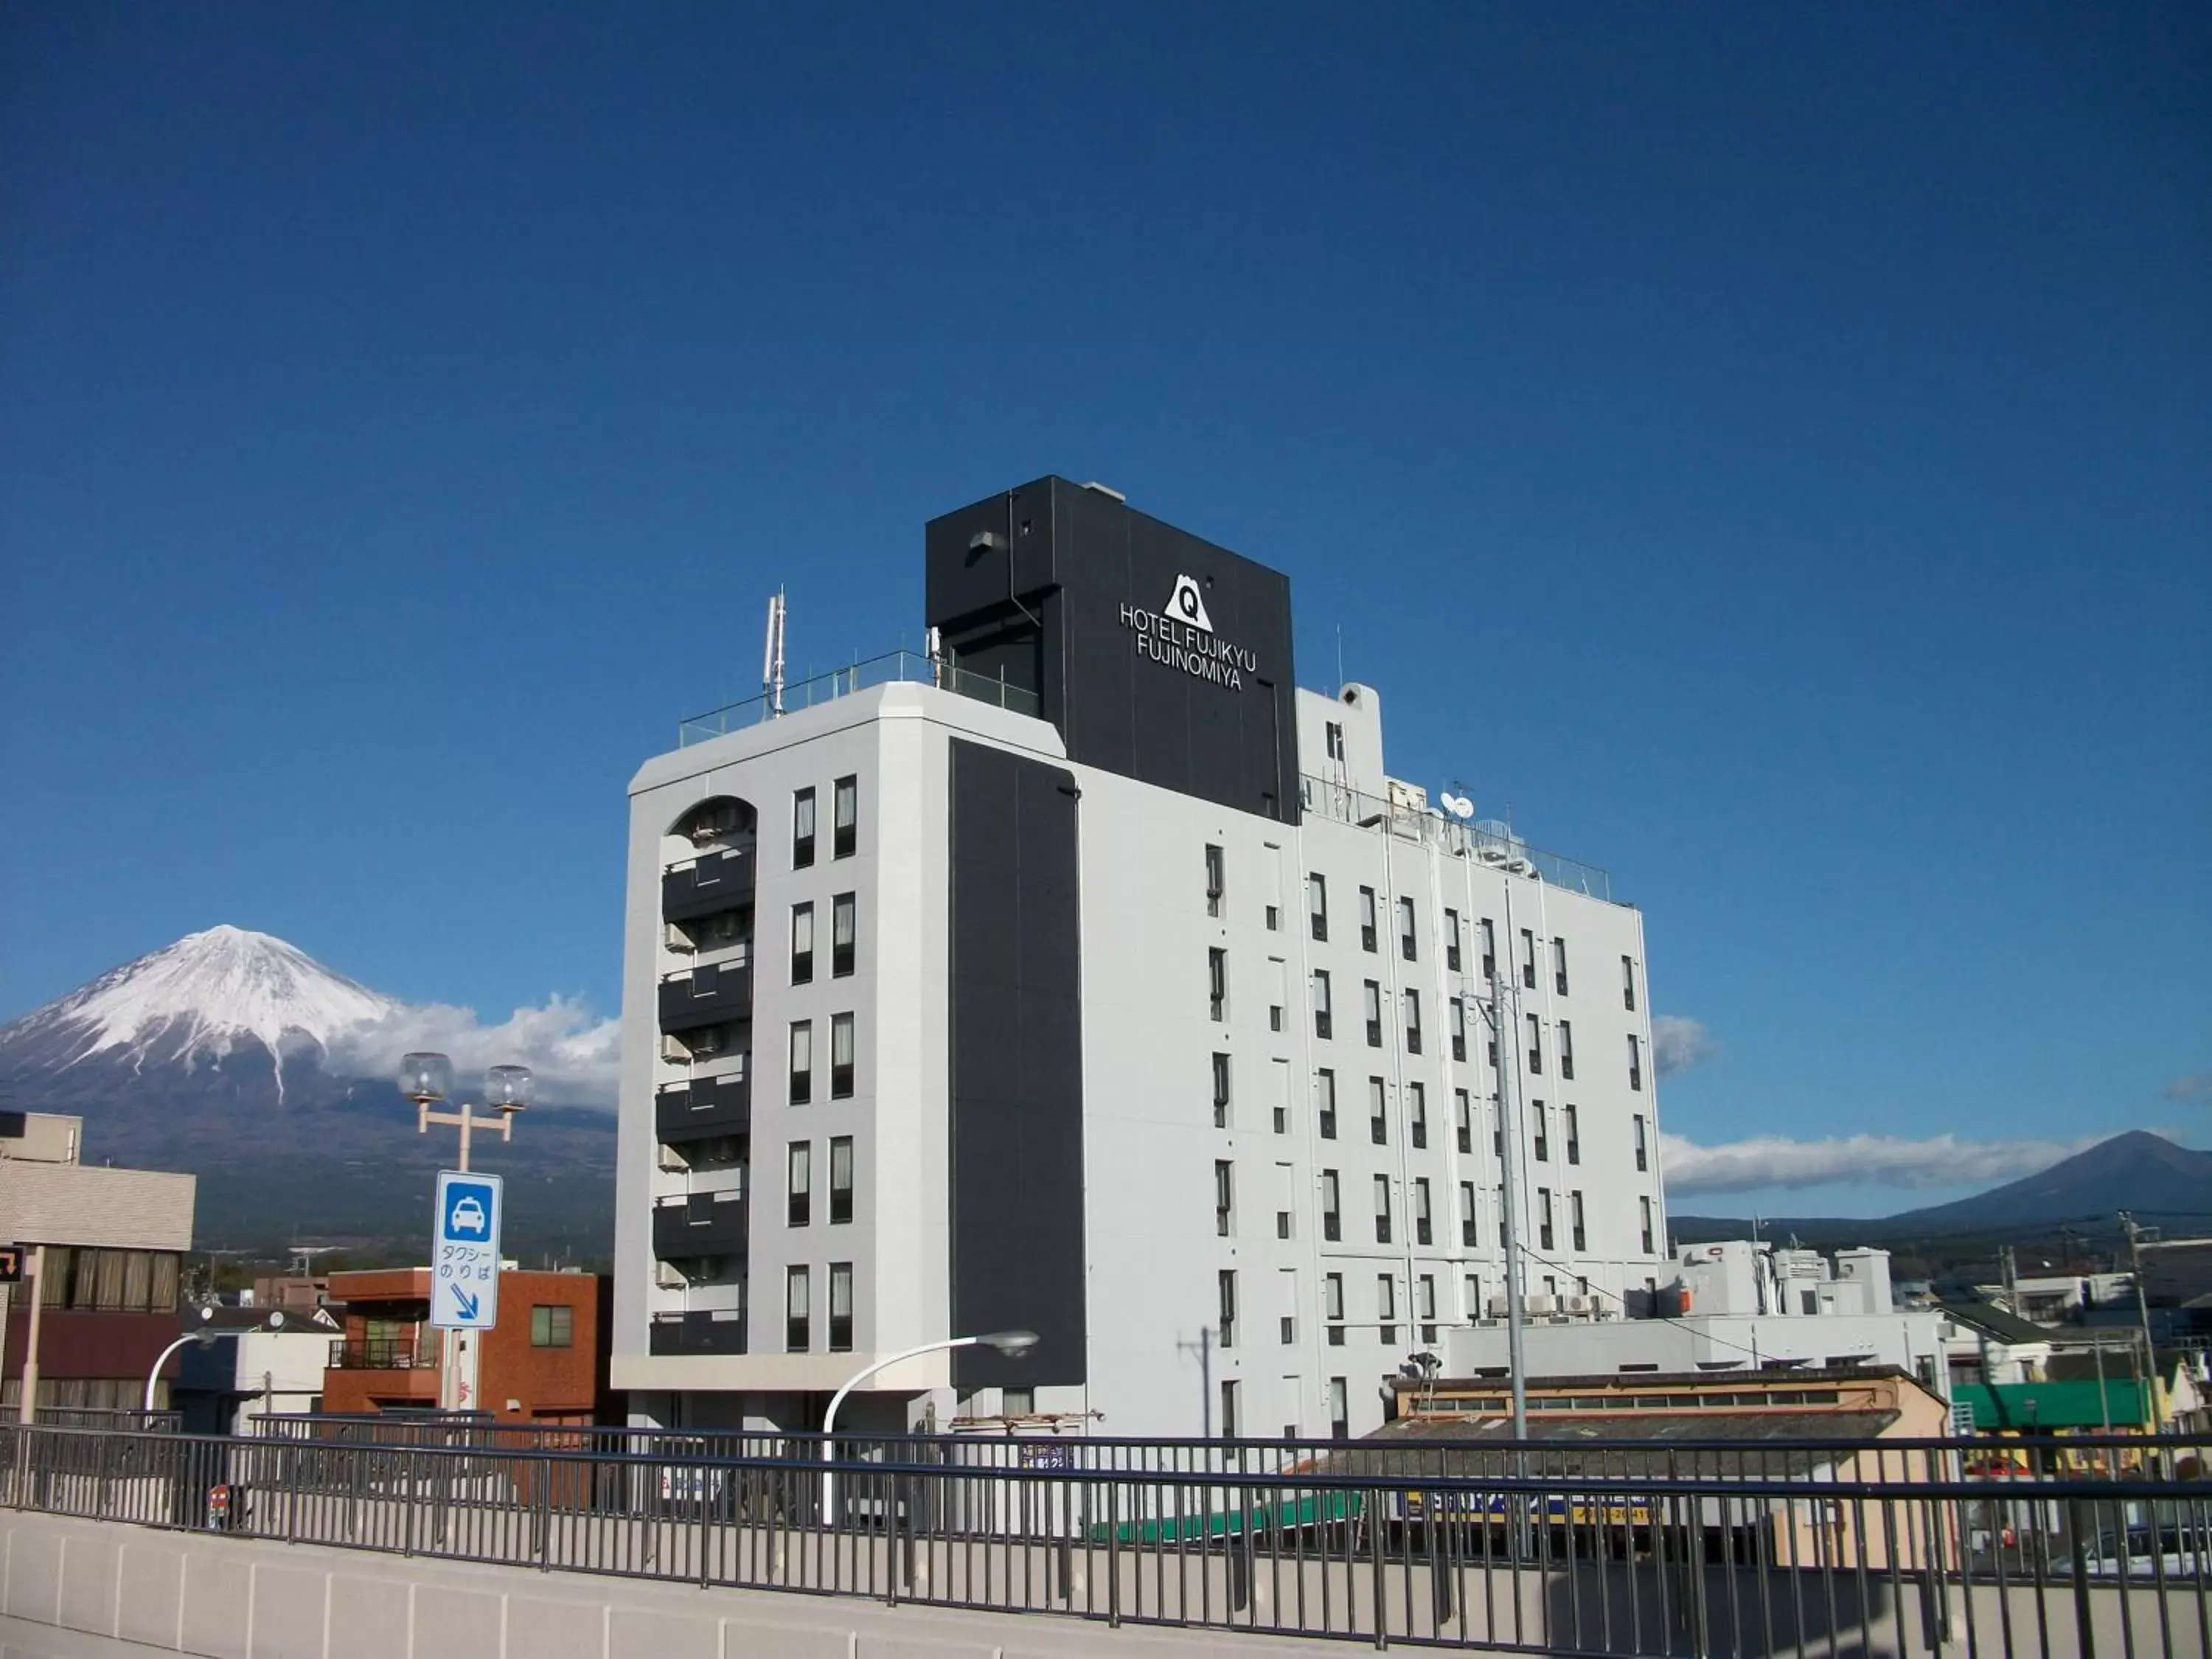 Property building in Fujinomiya Fujikyu Hotel